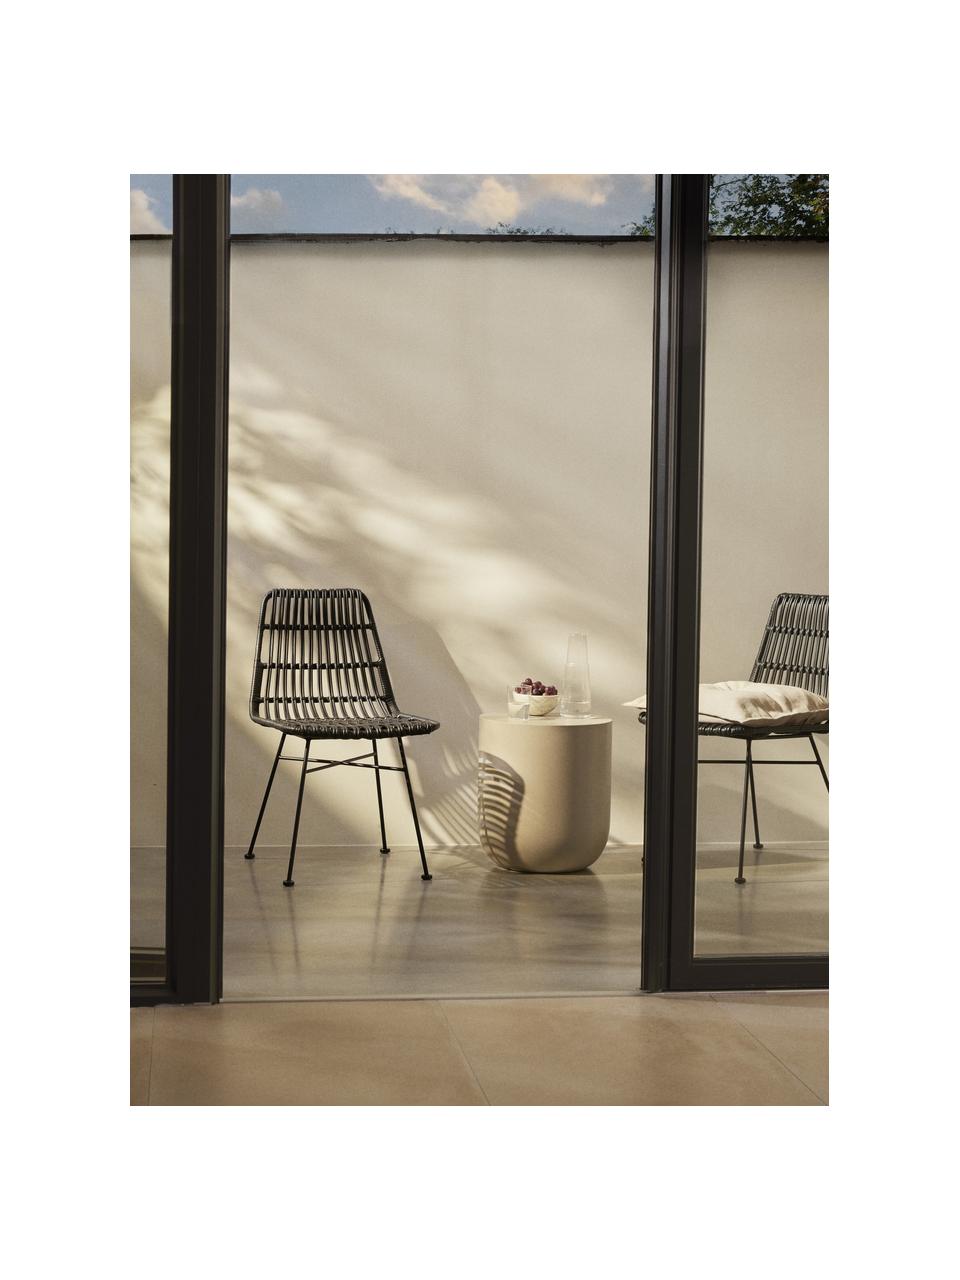 Polyrotan stoelen Costa, 2 stuks, Zitvlak: polyethyleen vlechtwerk, Frame: gepoedercoat metaal, Zwart, B 47 x D 61 cm